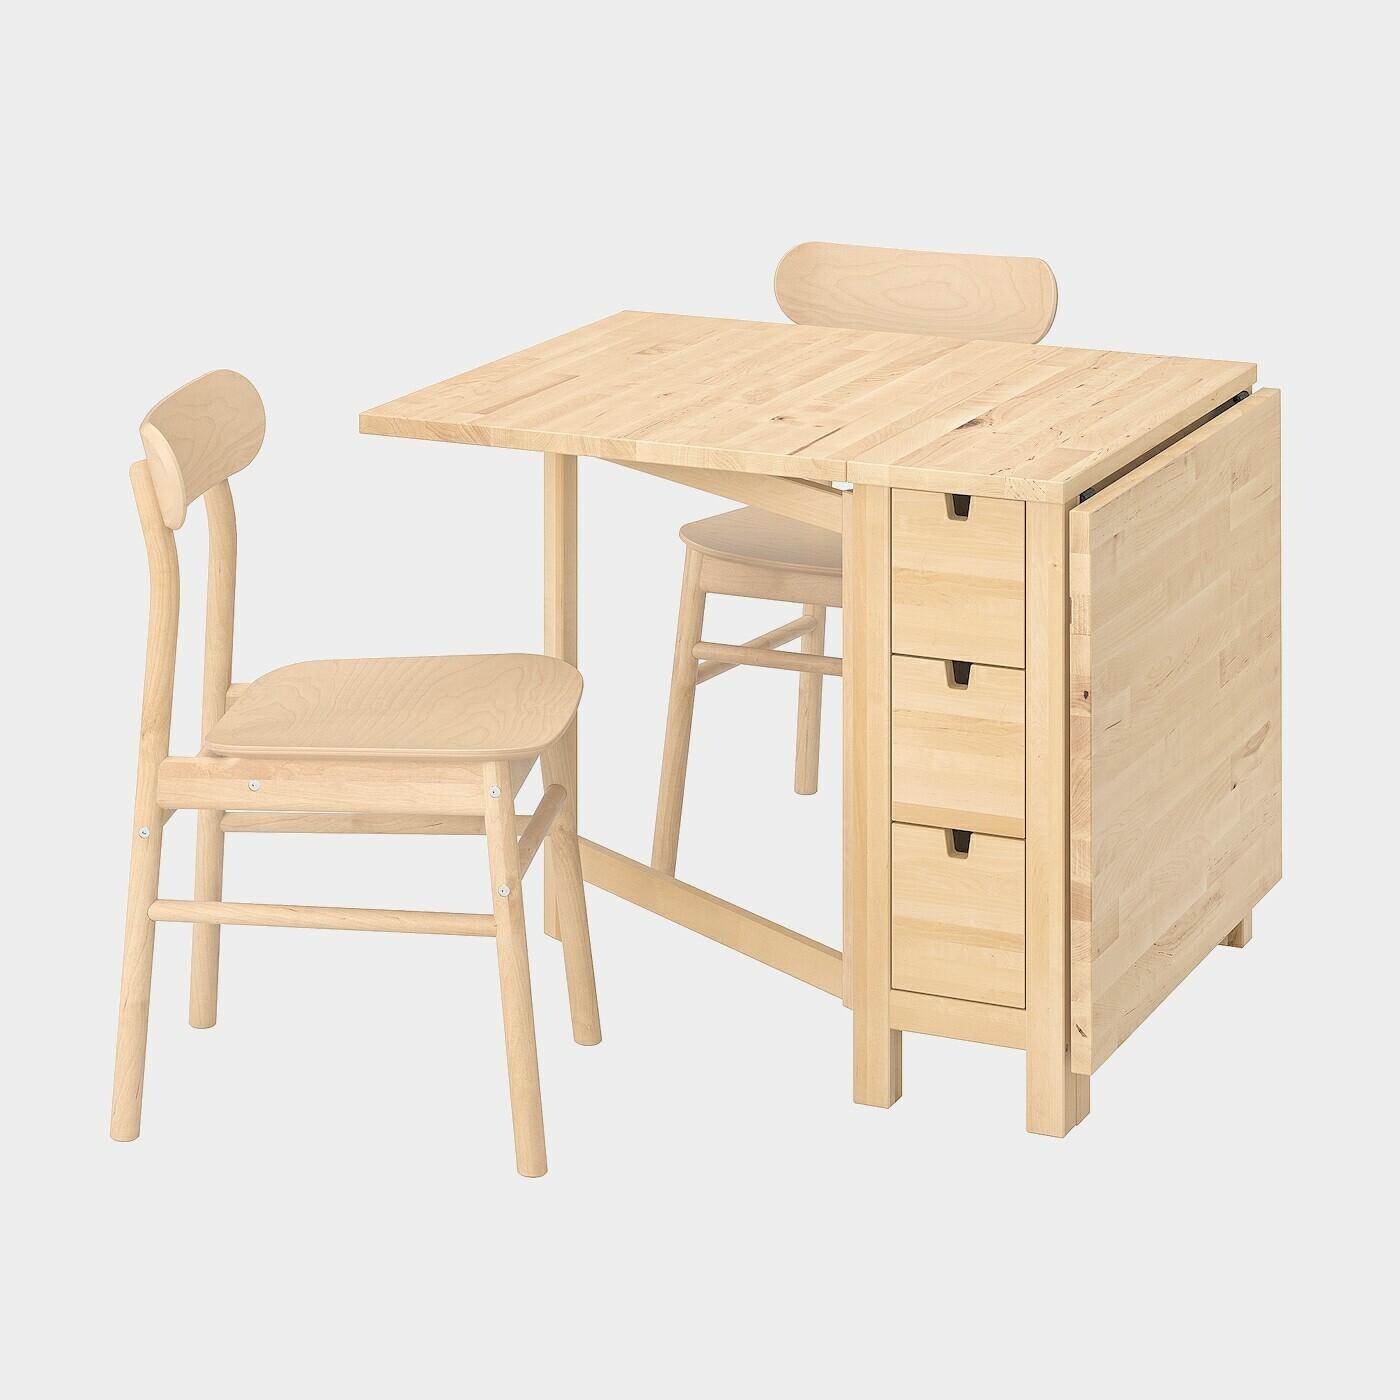 NORDEN / RÖNNINGE Tisch und 2 Stühle  -  - Möbel Ideen für dein Zuhause von Home Trends. Möbel Trends von Social Media Influencer für dein Skandi Zuhause.